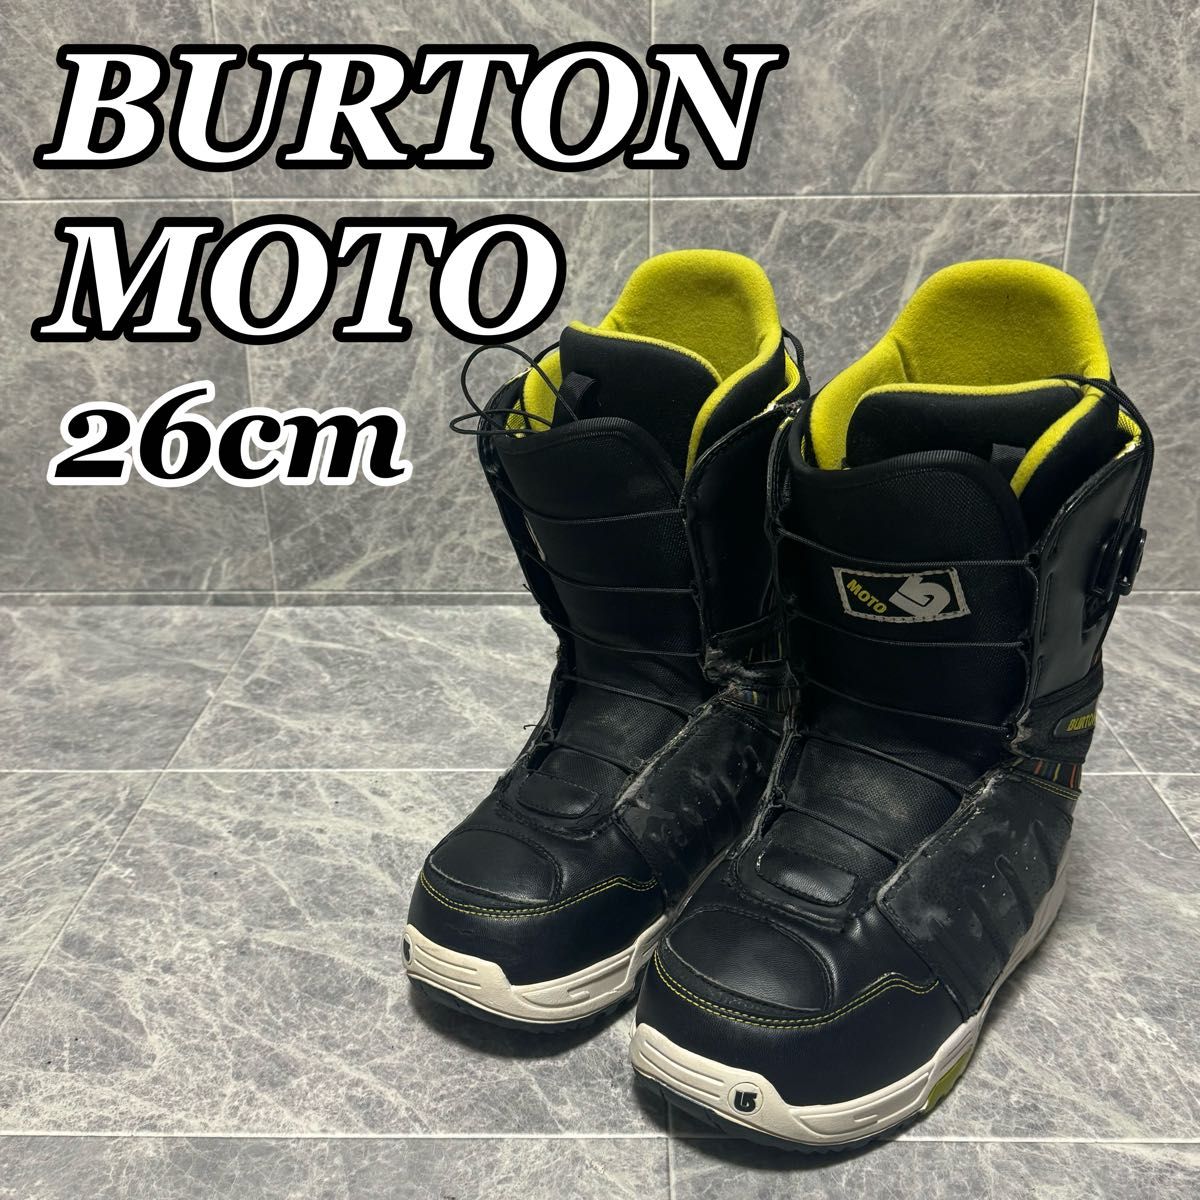 BURTON バートン MOTO モト スノーボードブーツ クイックレース メンズ 26cm